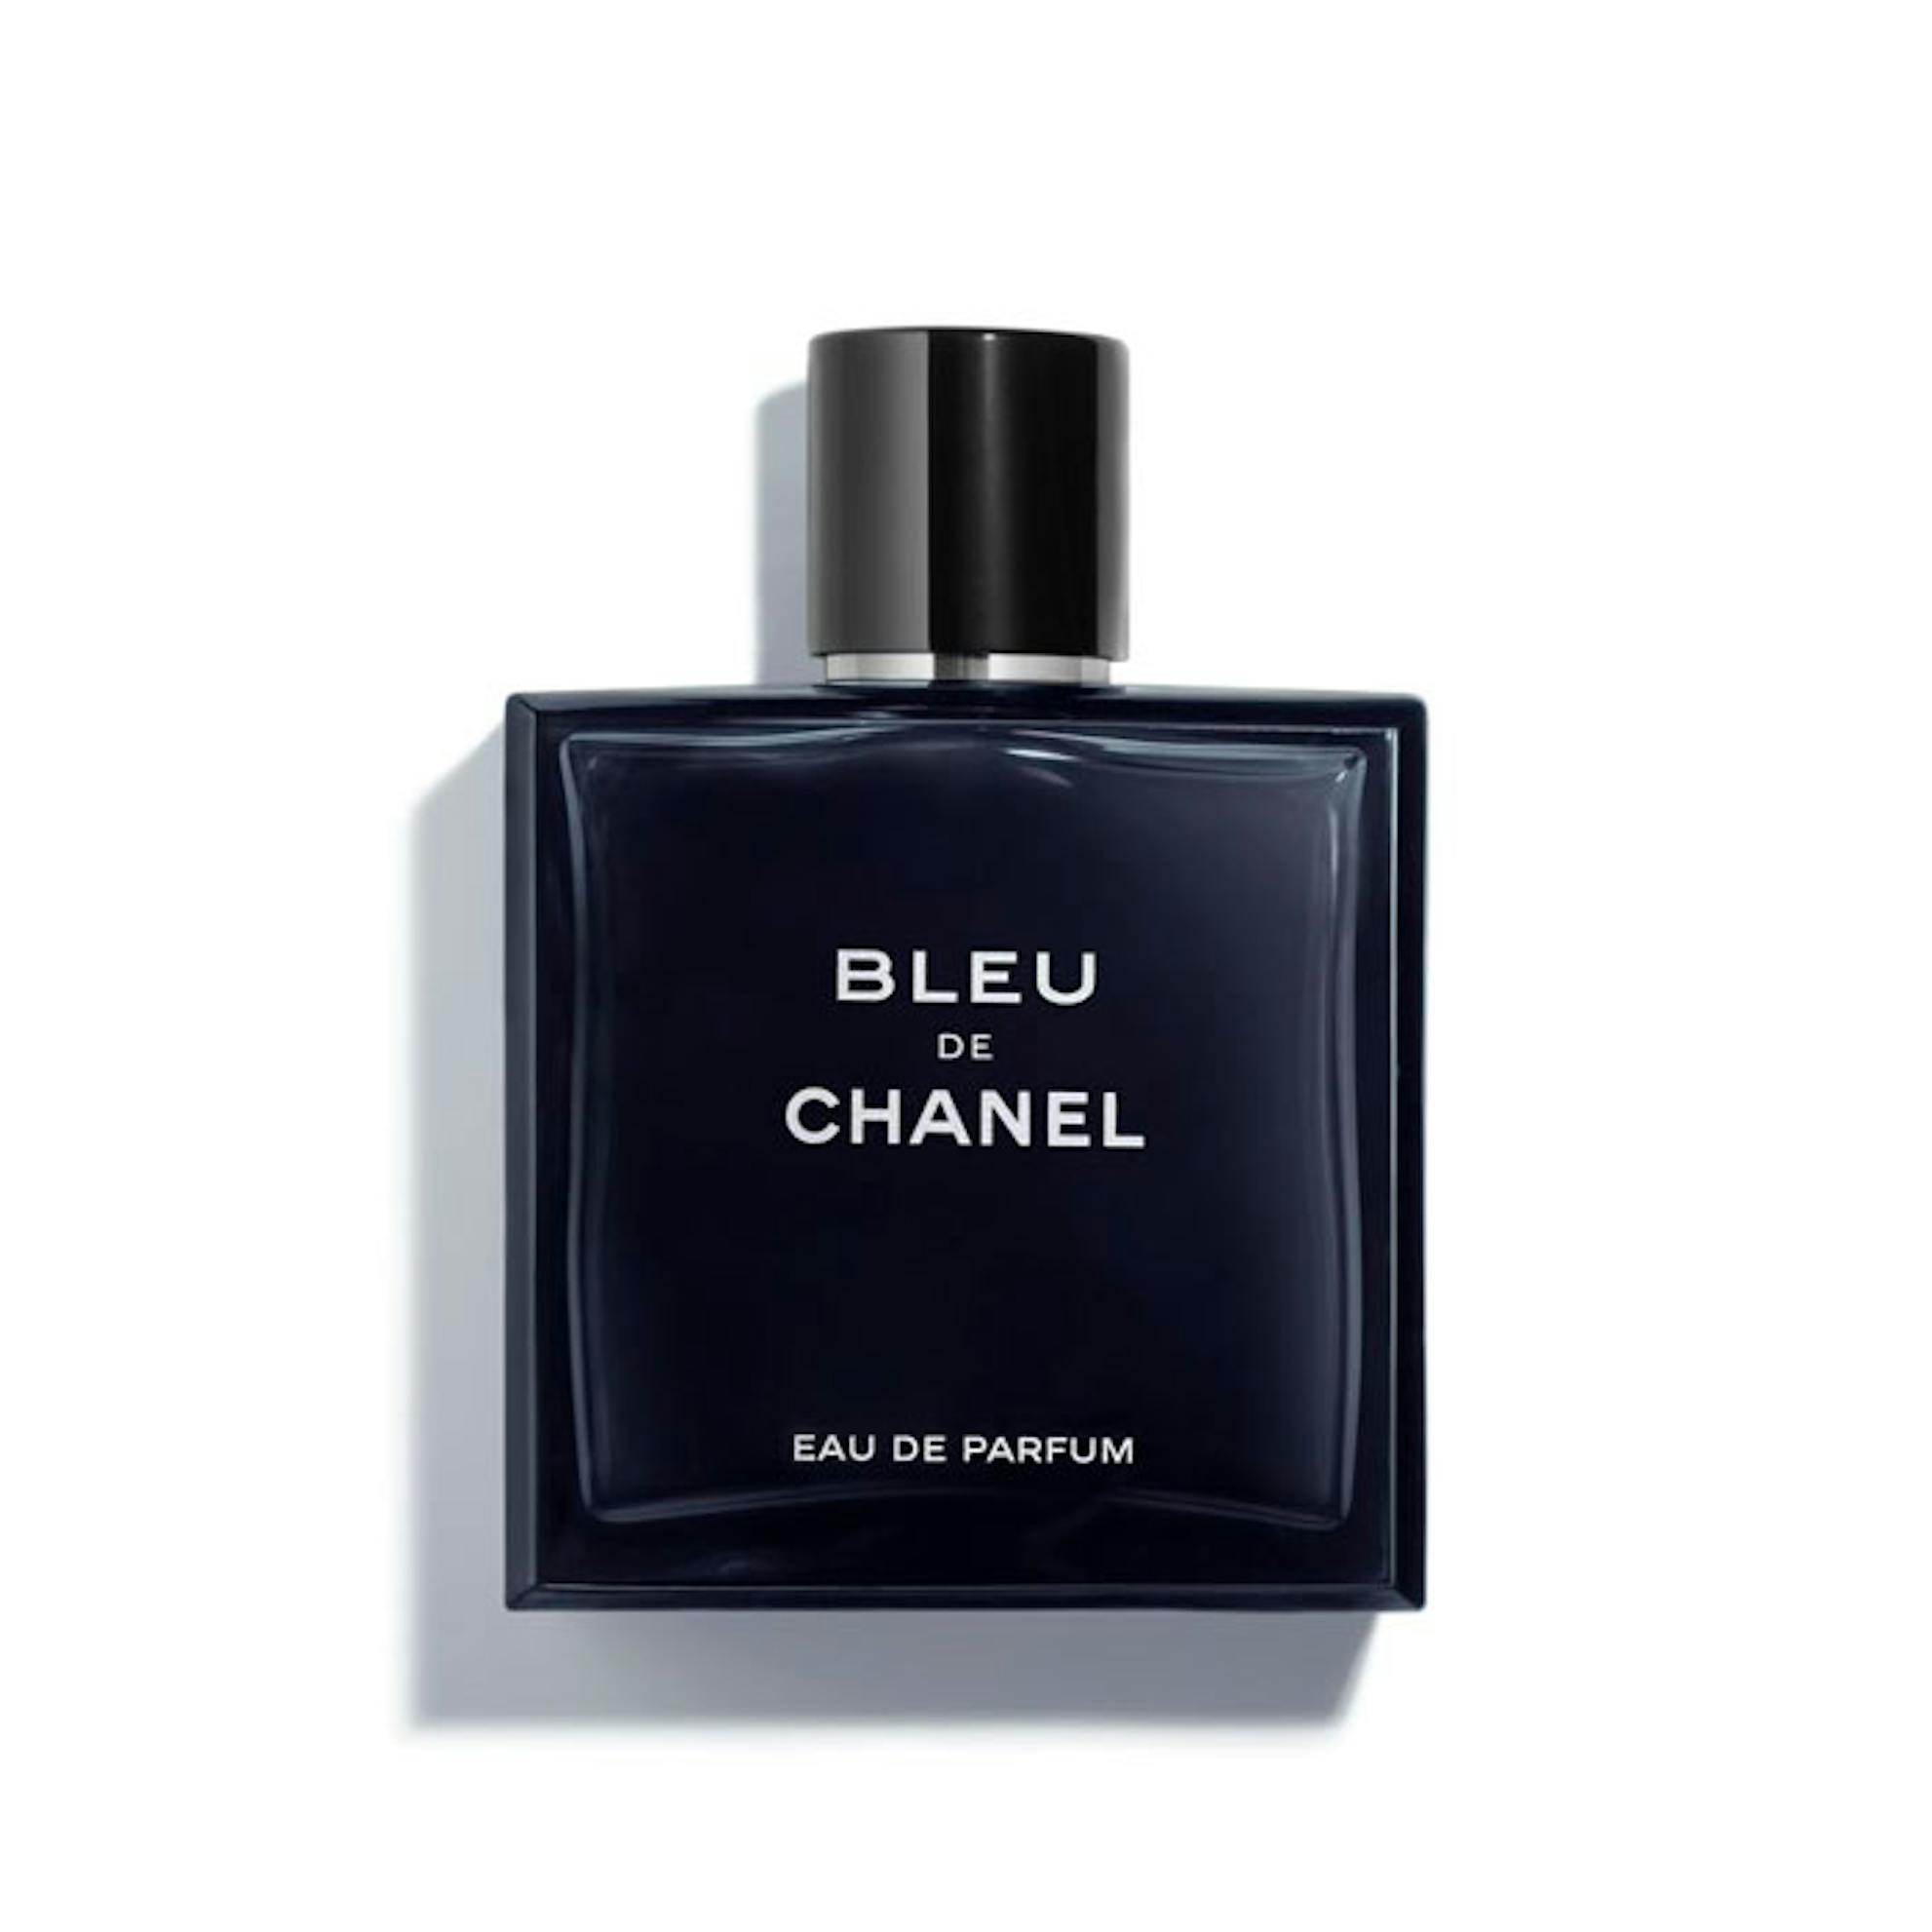 Chanel Bleu De Chanel Eau De Parfum Spray 100ml